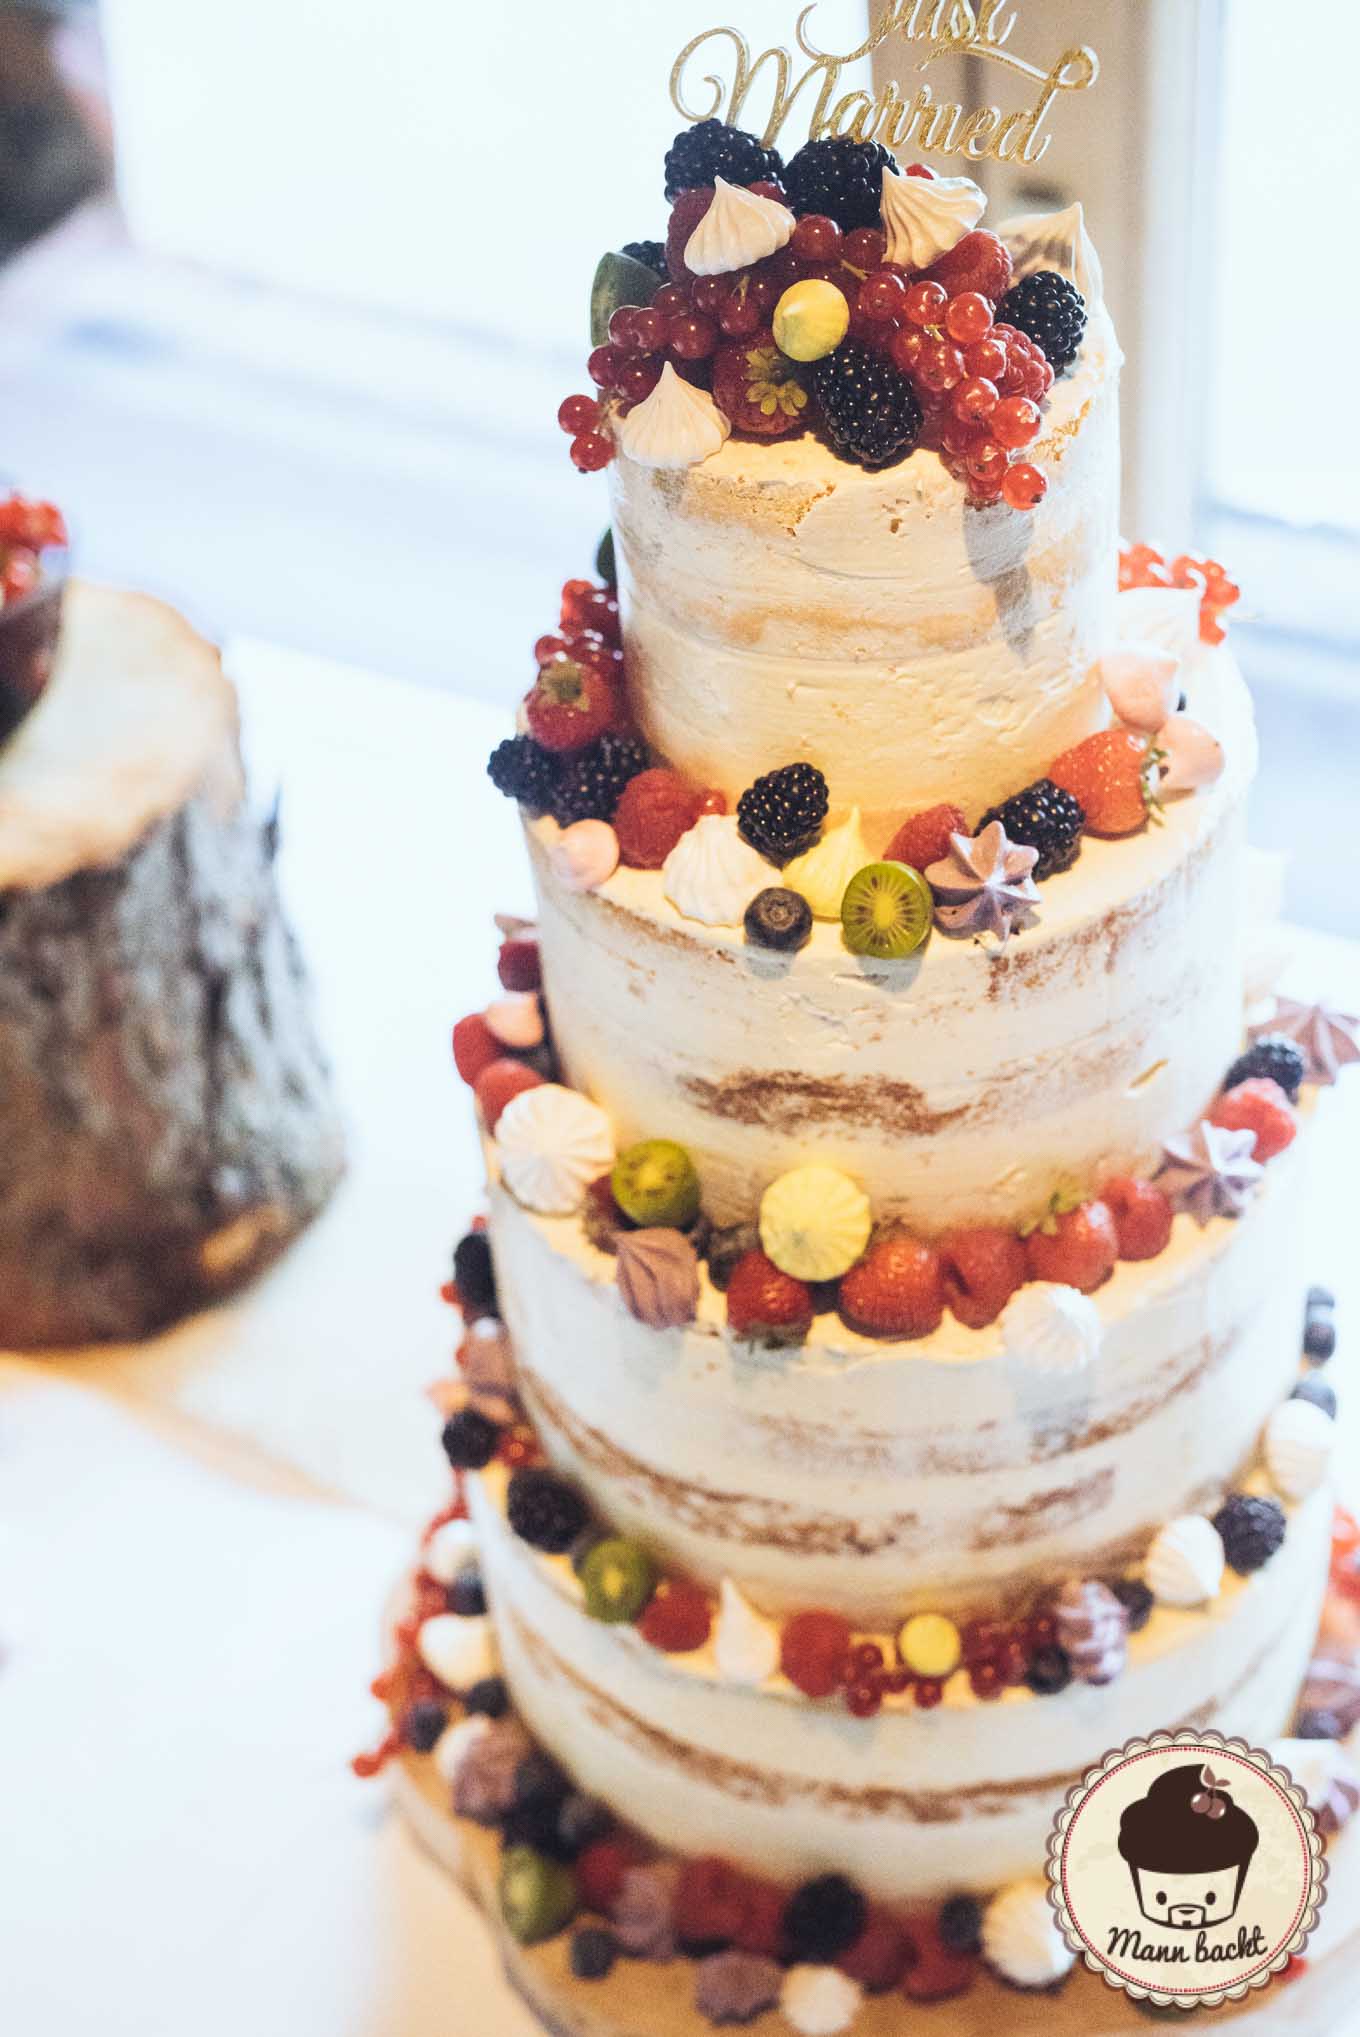 wedding-cake-hochzeitstorte-mann-backt-marian-moschen-naked-cake-6-von-10